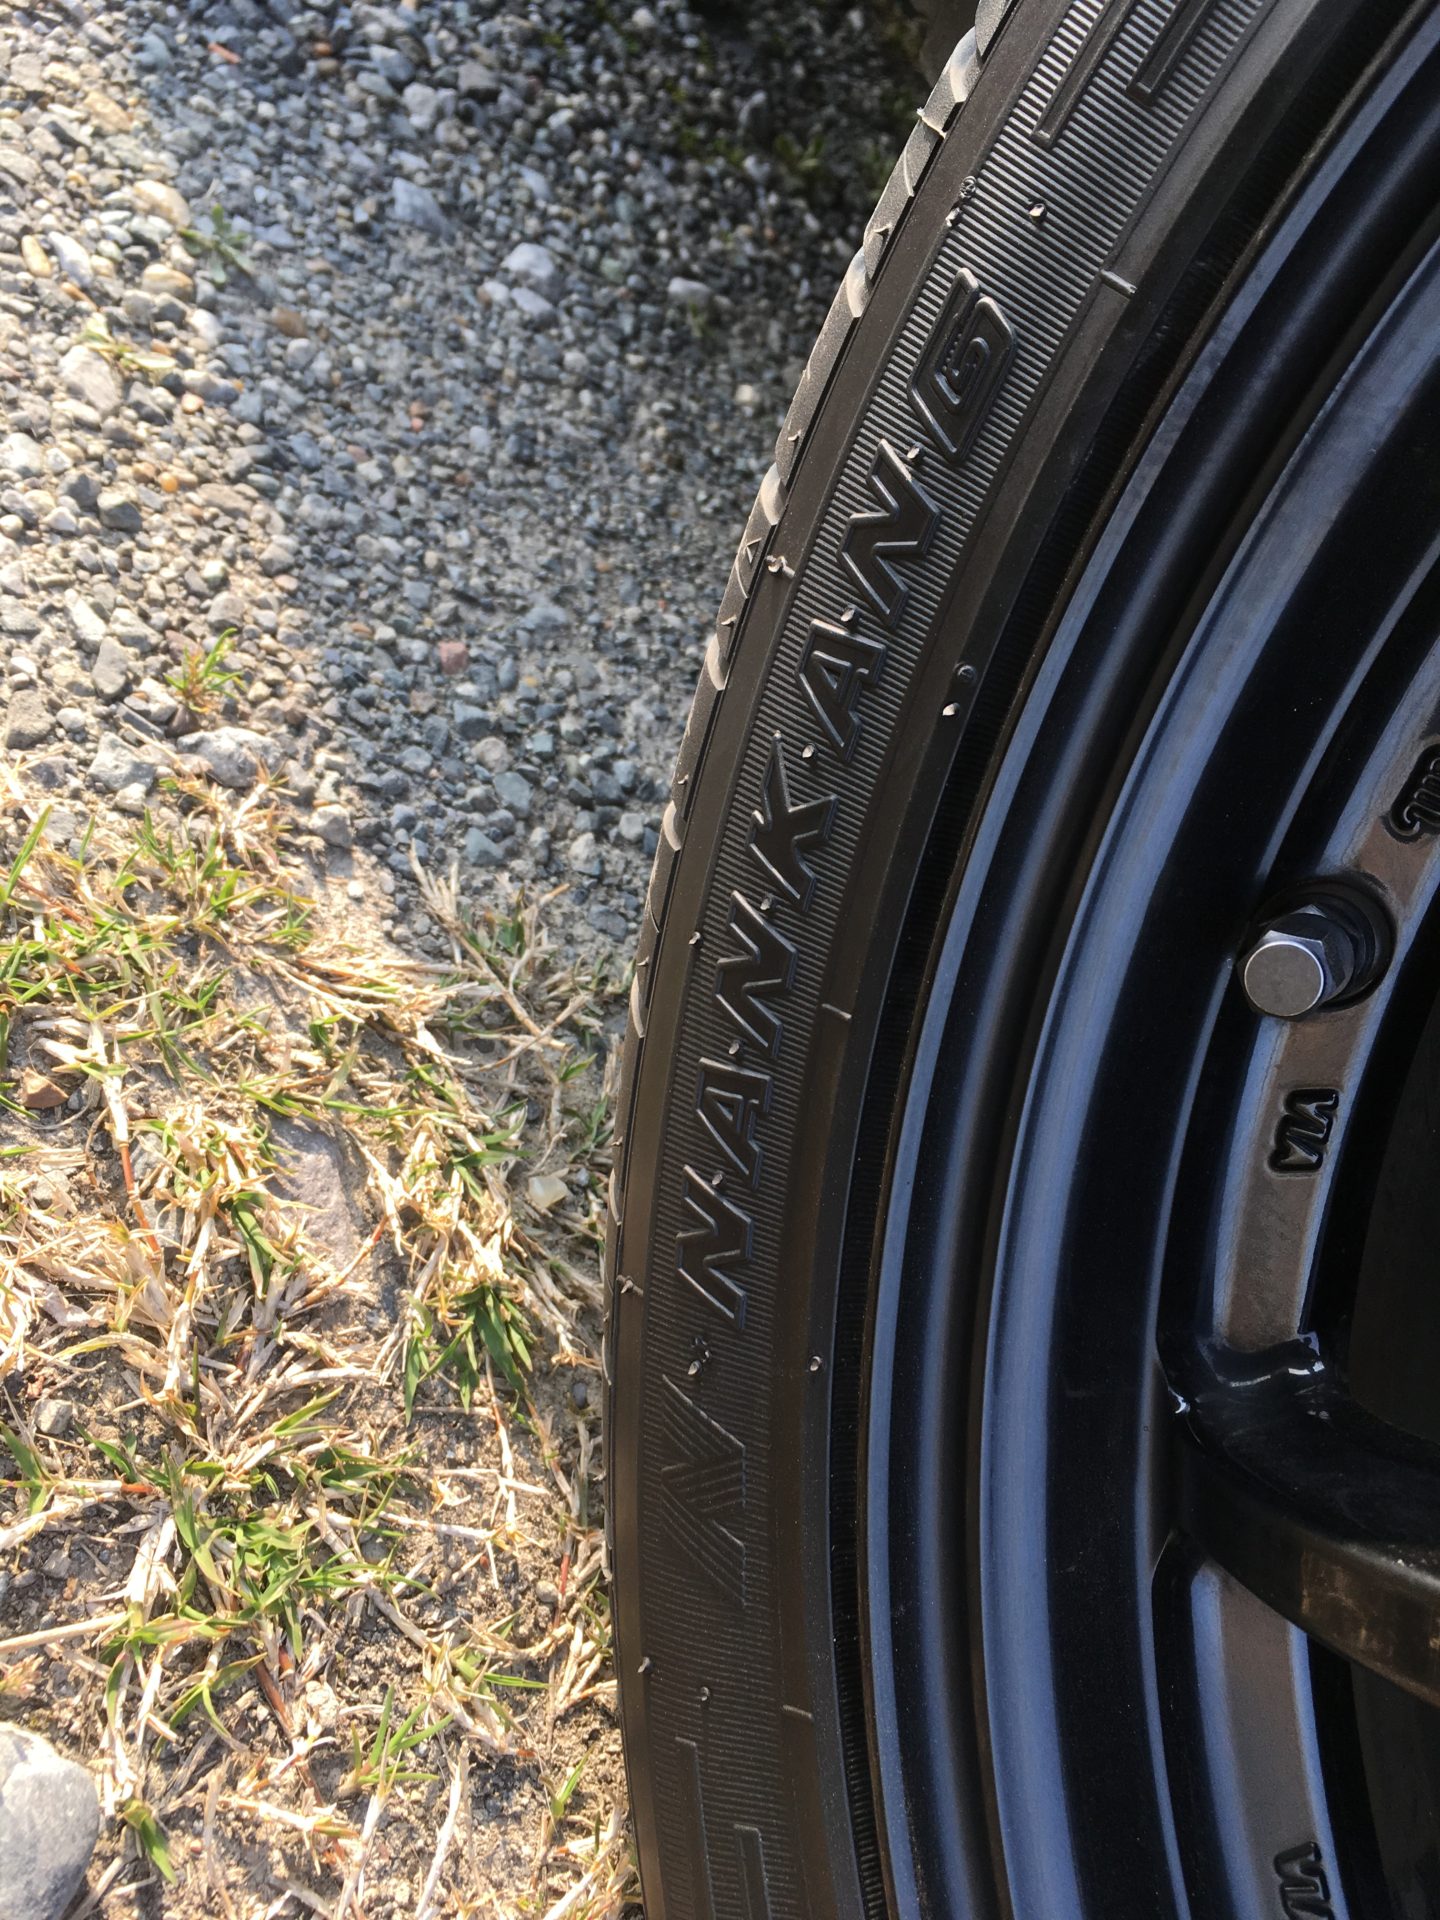 日本メーカー危うし 海外タイヤ購入 ナンカンnankang 台湾メーカー のタイヤの評価は如何に